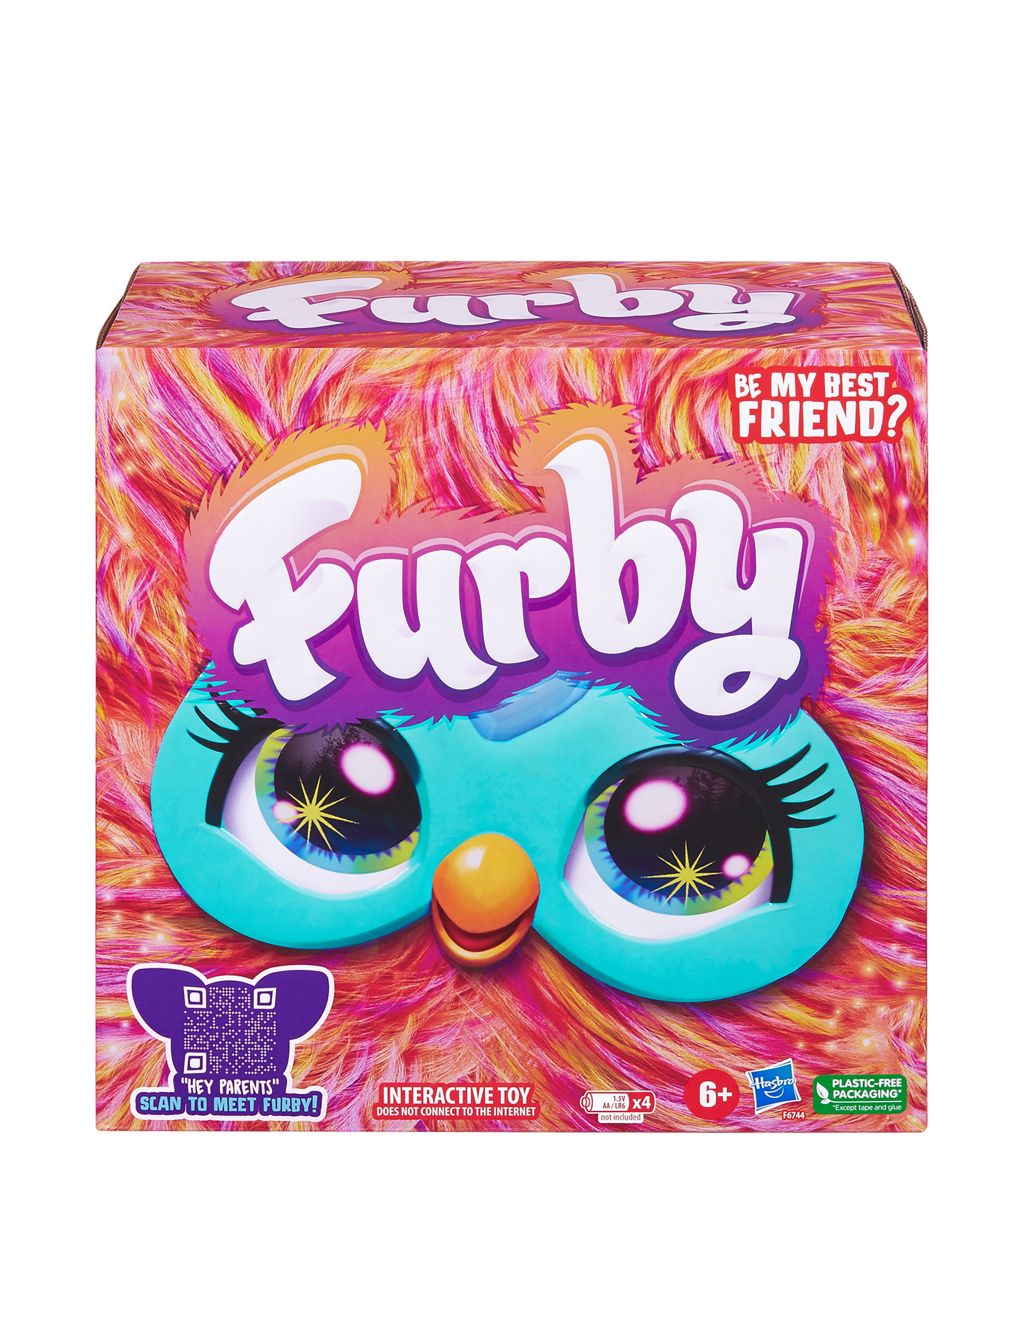 Furby (6-9 Yrs)